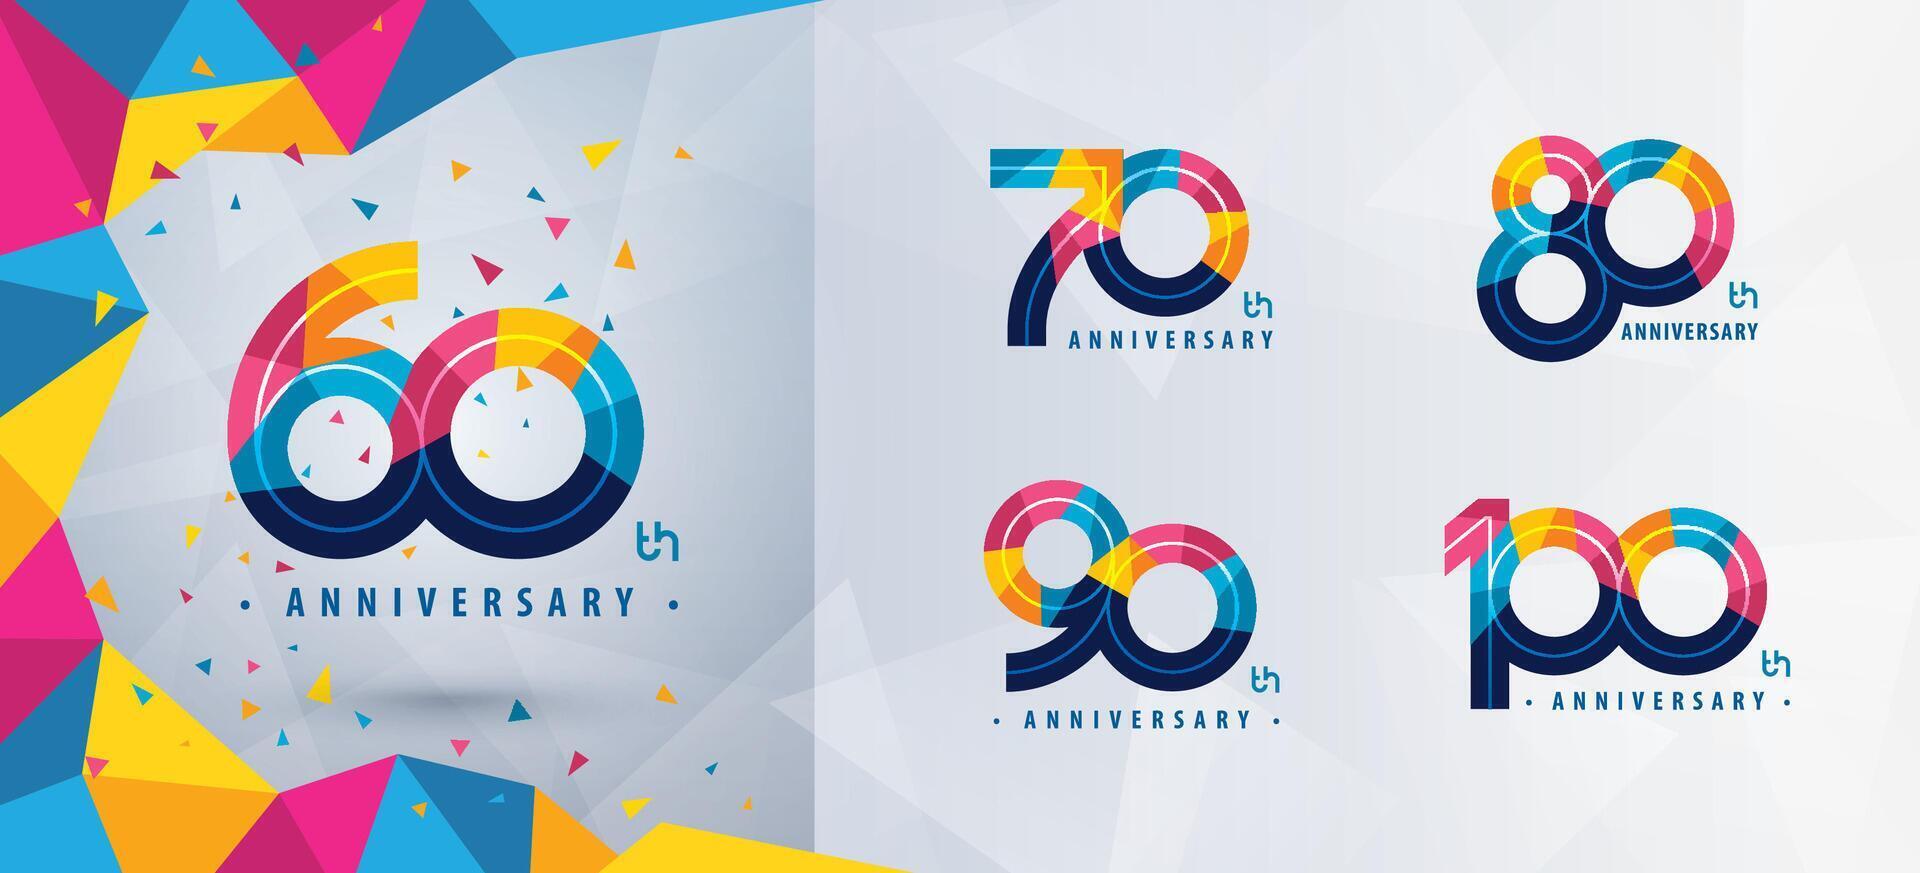 einstellen von 60 zu 100 Jahre Jahrestag Logo Design, sechzig zu hundert Jahre feiern Jahrestag Logo, abstrakt bunt geometrisch Dreieck zum Feier vektor